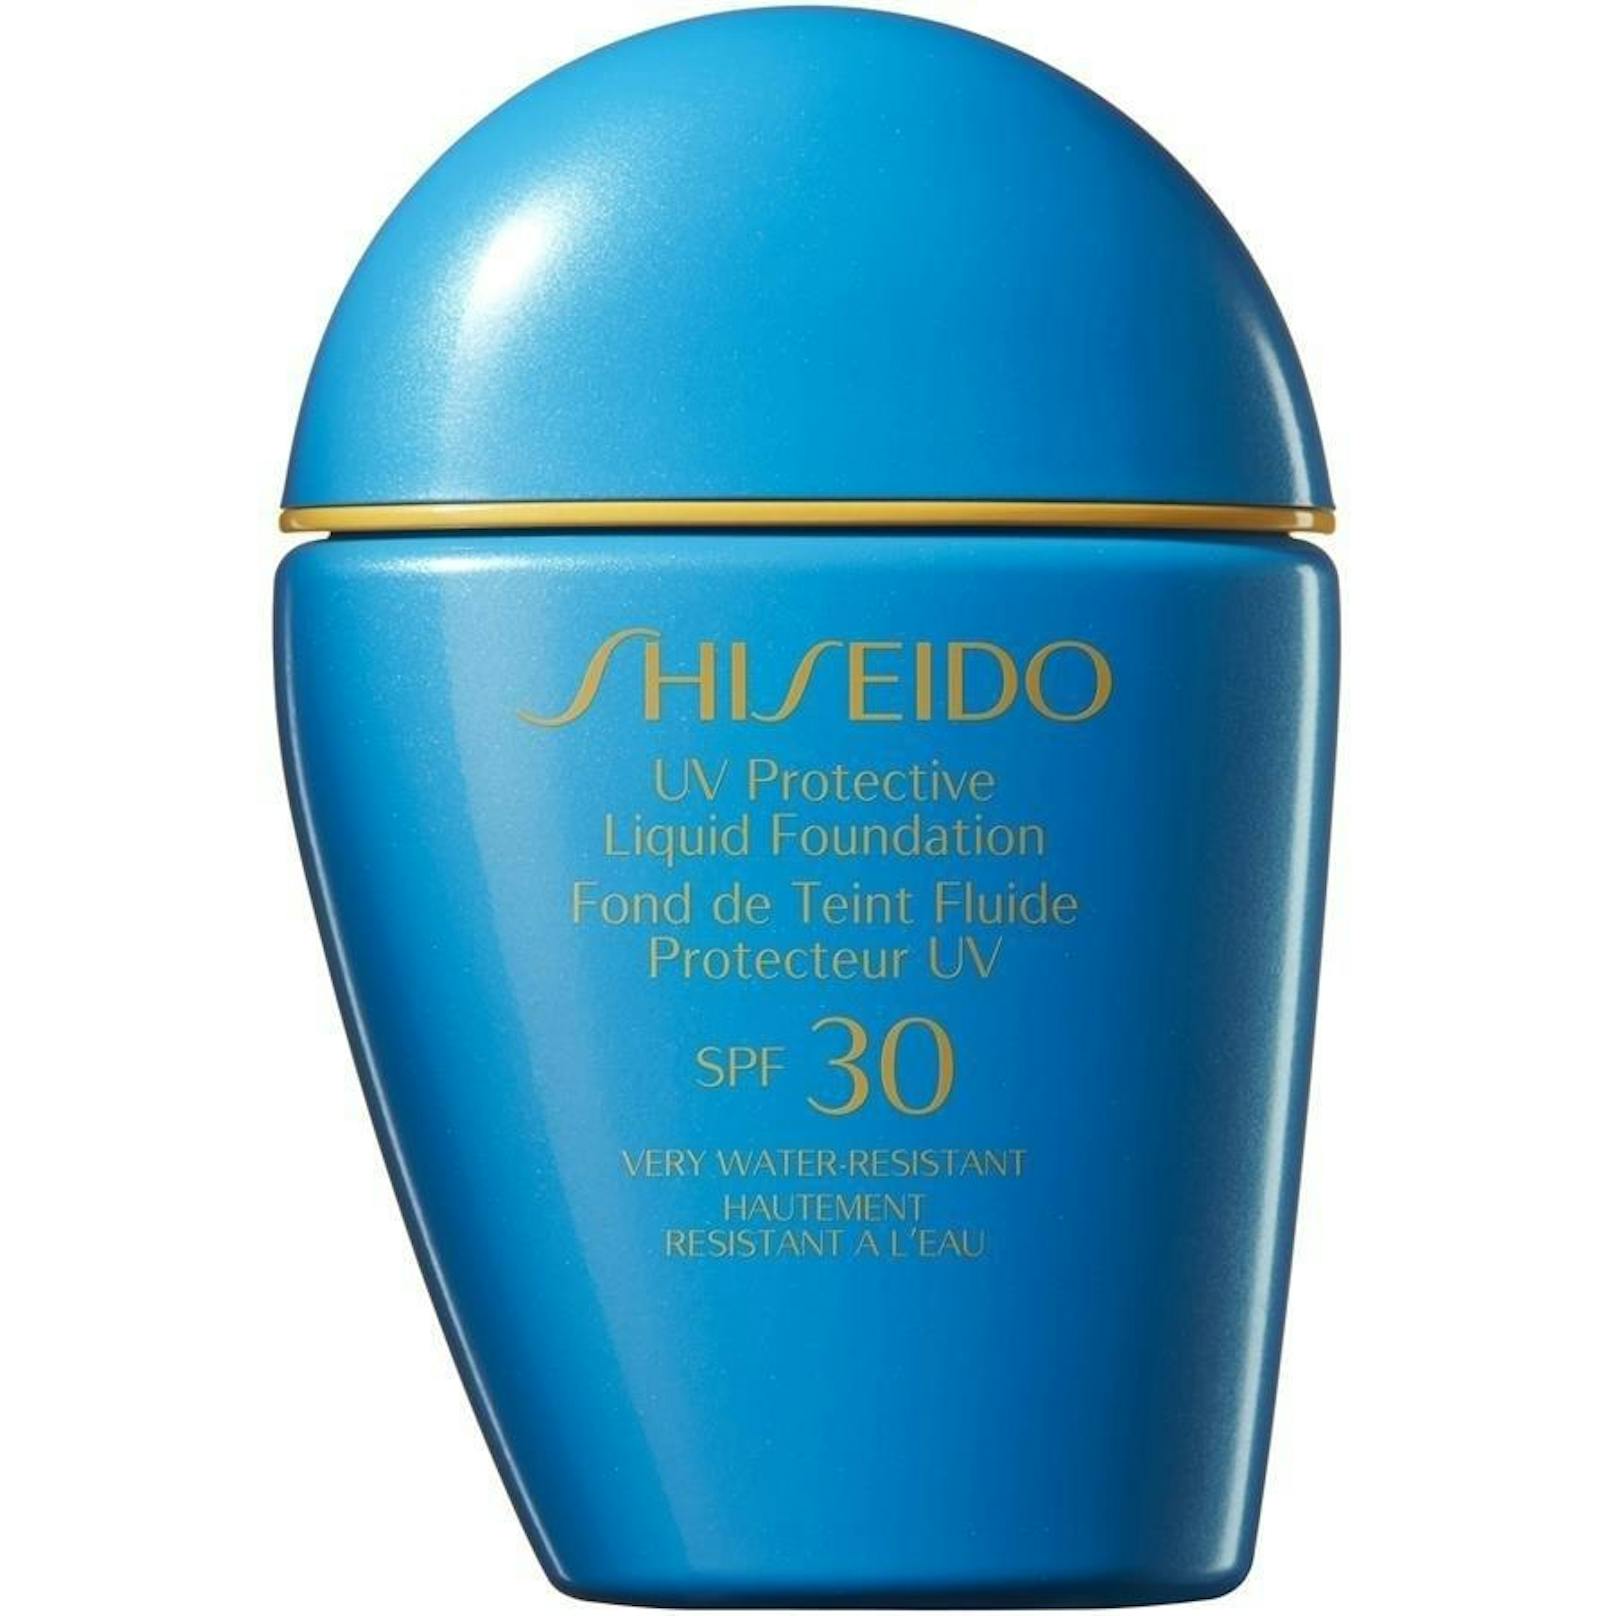 <b>Full Coverage Make-up: Suncare UV Protective Liquid Foundation von Shiseido um 39,99 Euro</b>
Die pflegende, wasserfeste Flüssig-Foundation mit LSF 30 schenkt der Haut ein makelloses, schimmerndes Finish. Sie ist äußerst resistent gegen Schweiß, Wasser und Sebum, abriebfest und wirkt über Stunden frisch und farbecht.